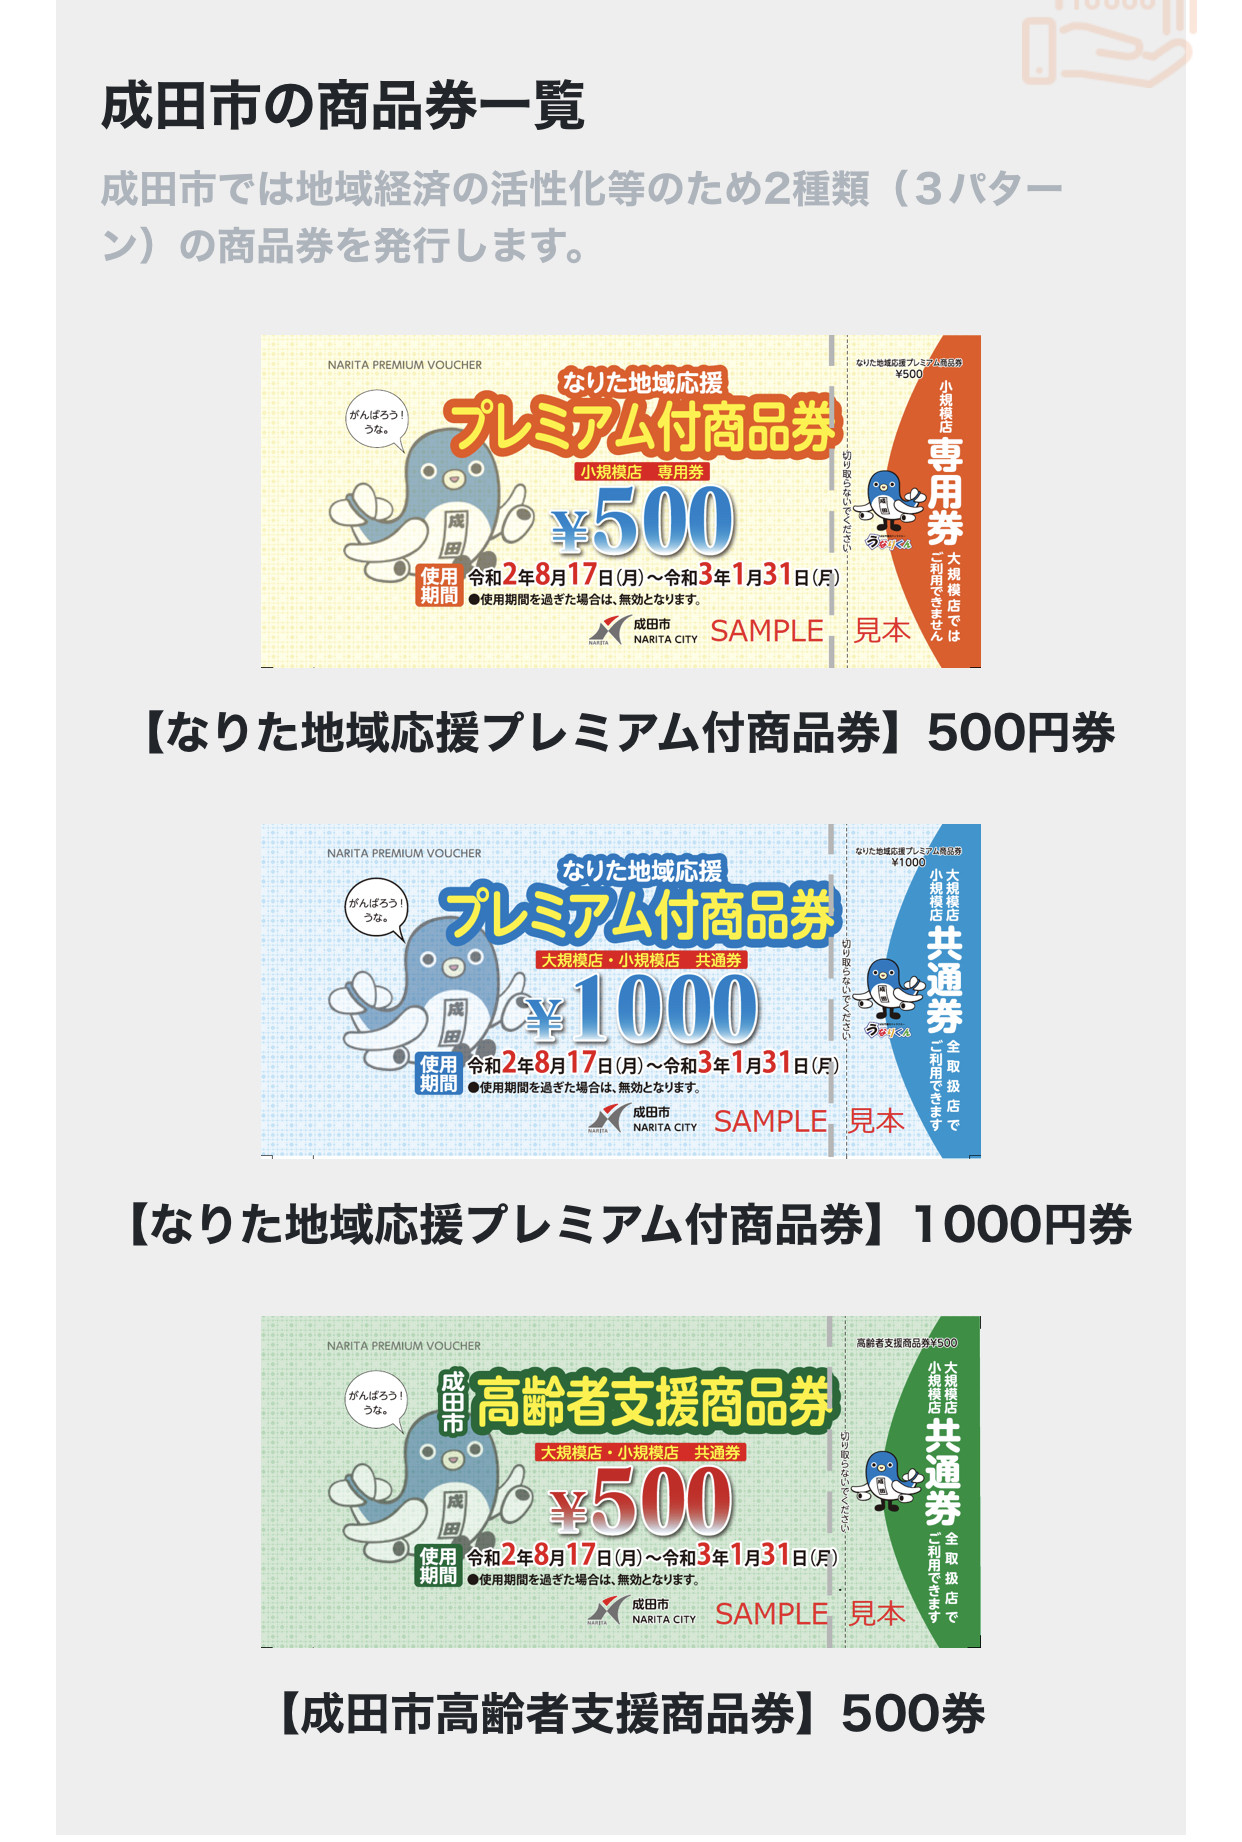 成田市プレミアム商品券の取り扱い期限。